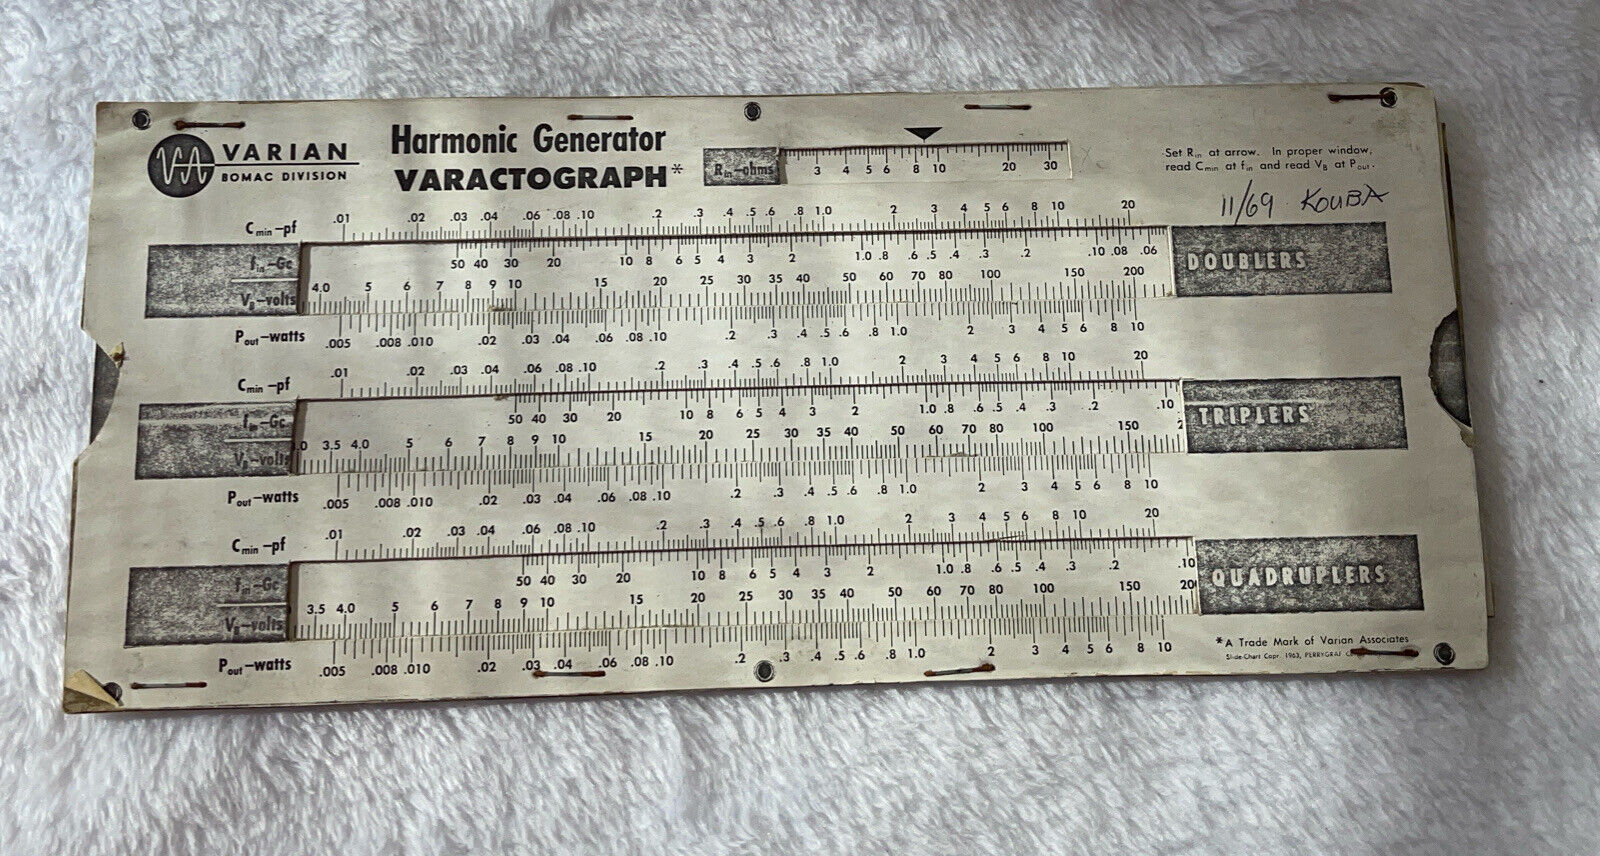 Vintage 1963 Varian Harmonic Generator Slde Rule